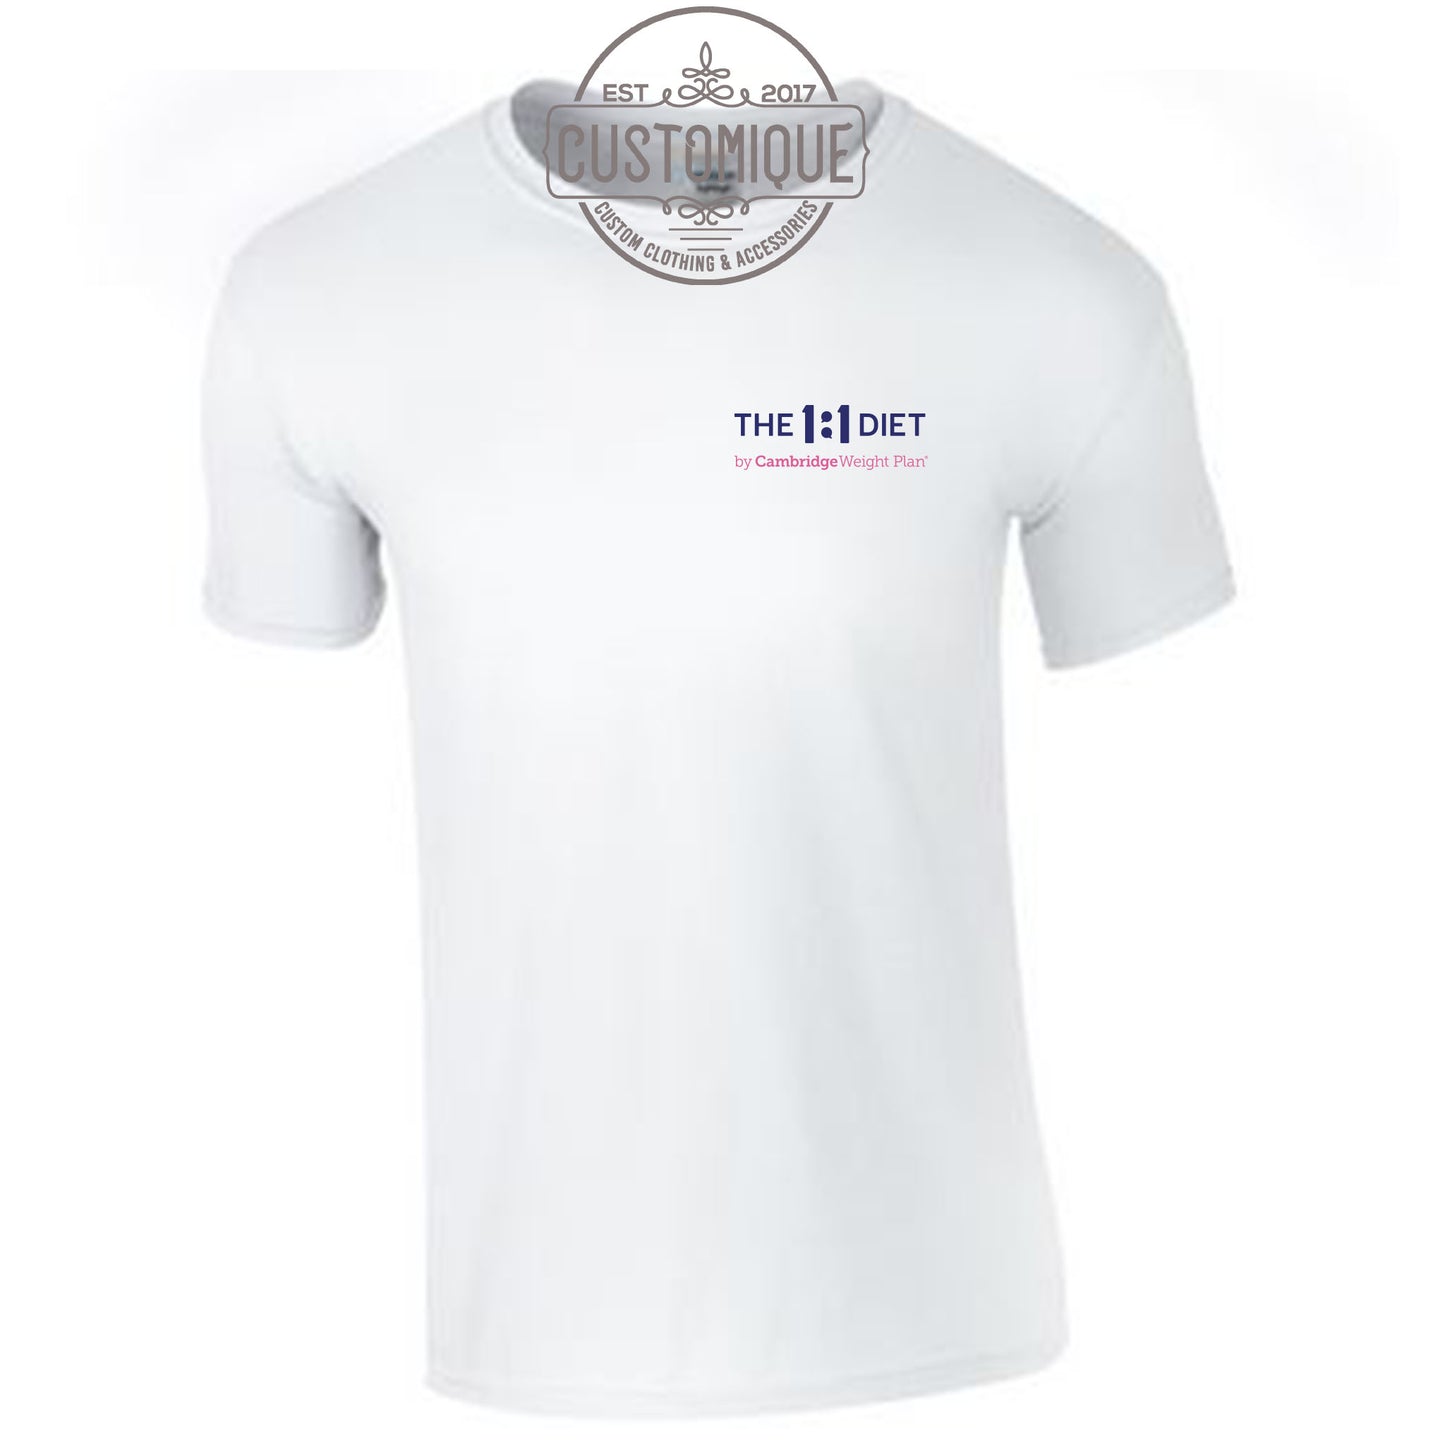 The 1:1 Diet - Mens/UNISEX Logo T-Shirt